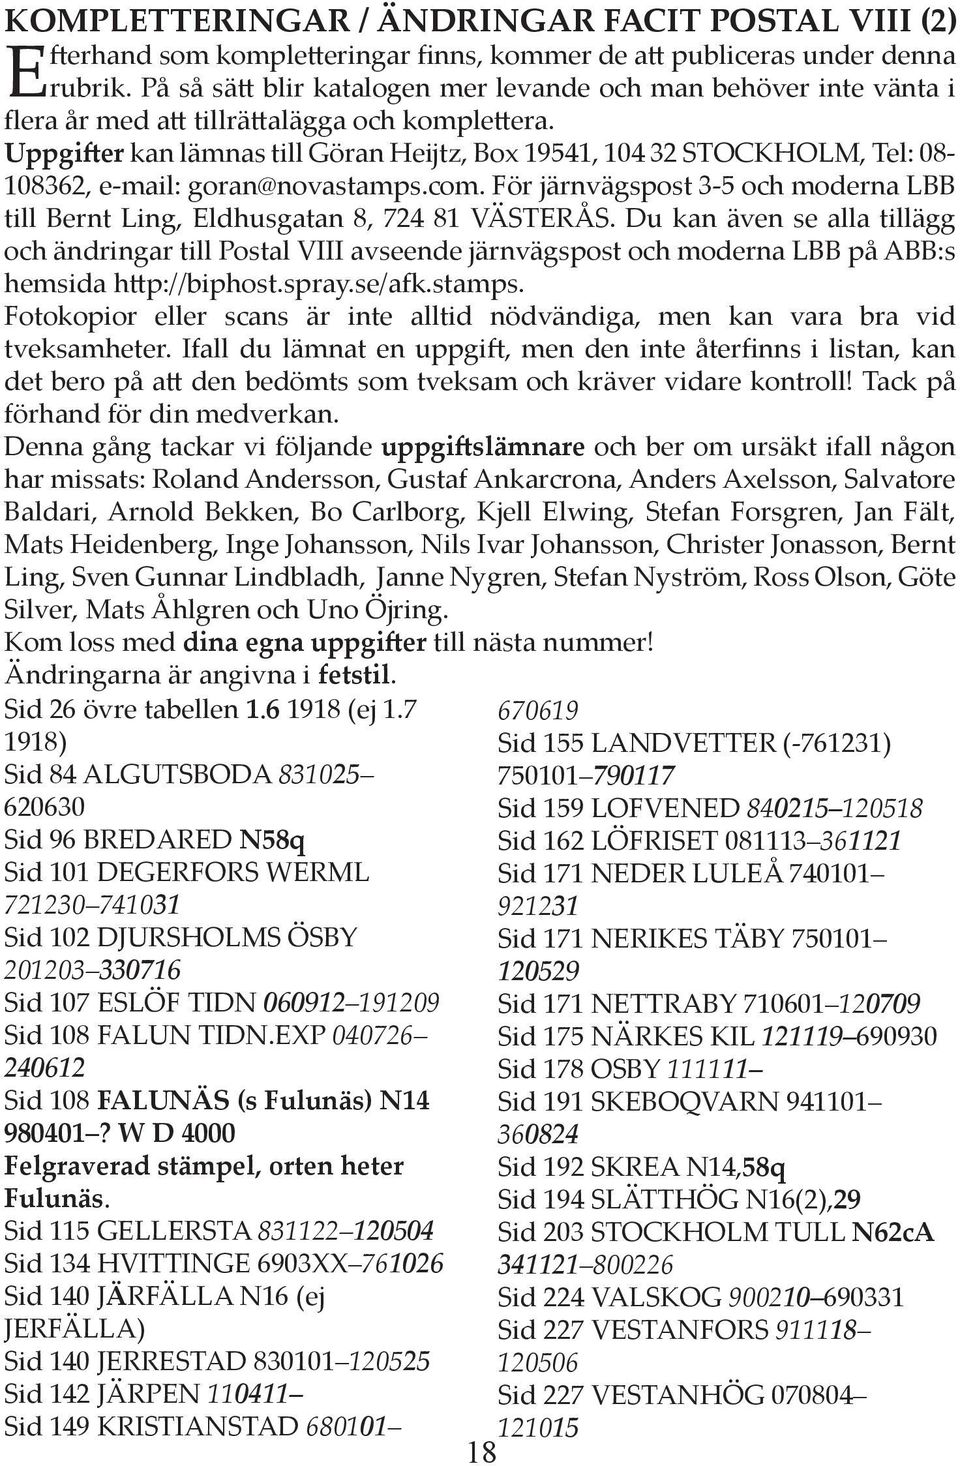 Uppgi er kan lämnas till Göran Heĳtz, Box 19541, 104 32 STOCKHOLM, Tel: 08-108362, e-mail: goran@novastamps.com. För järnvägspost 3-5 och moderna LBB till Bernt Ling, Eldhusgatan 8, 724 81 VÄSTERÅS.